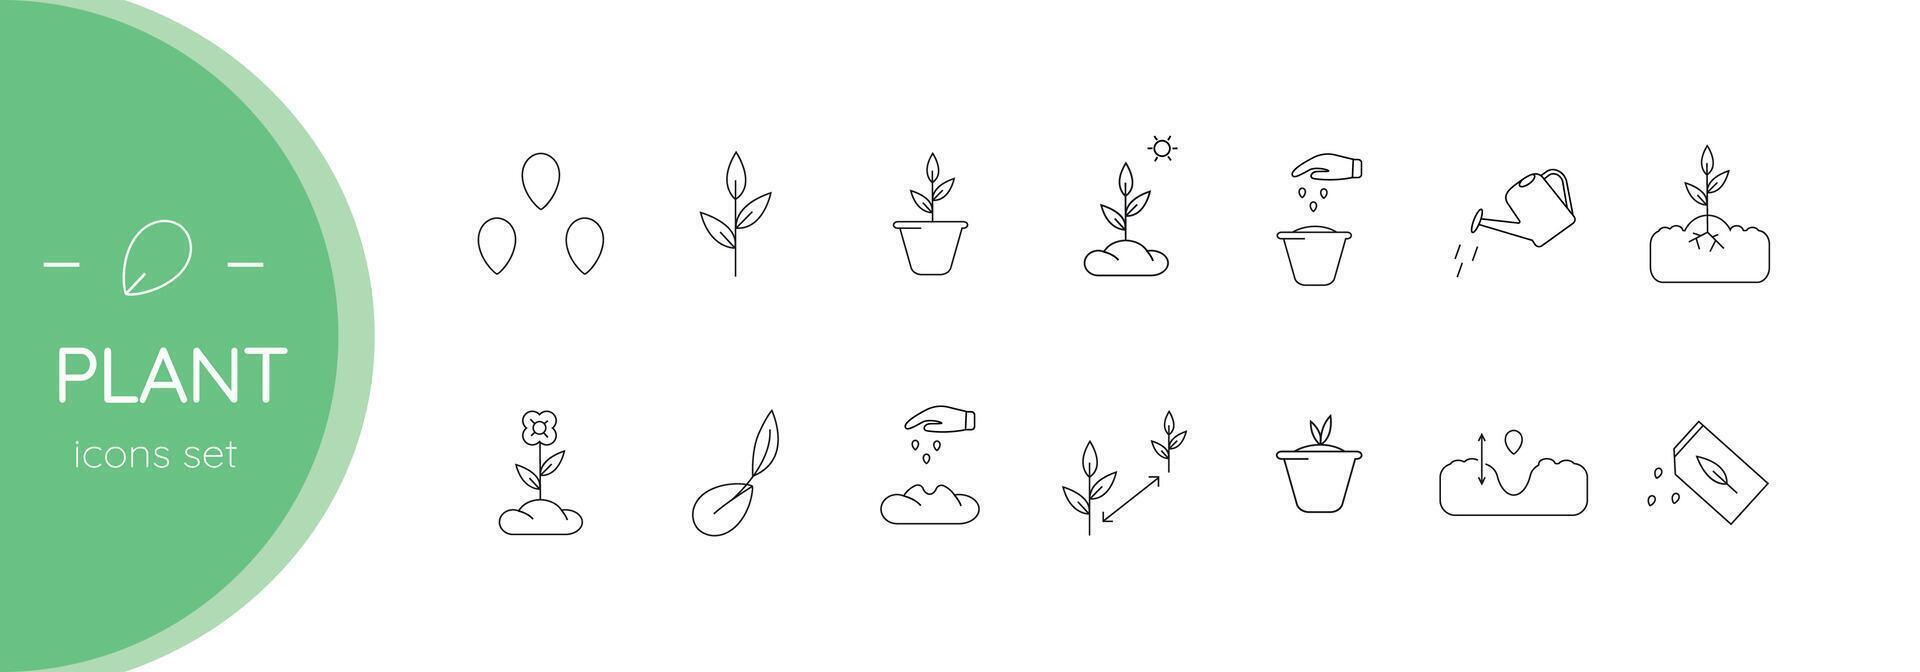 para plantar plantas. plantinha. conjunto do vetor linear ícones.